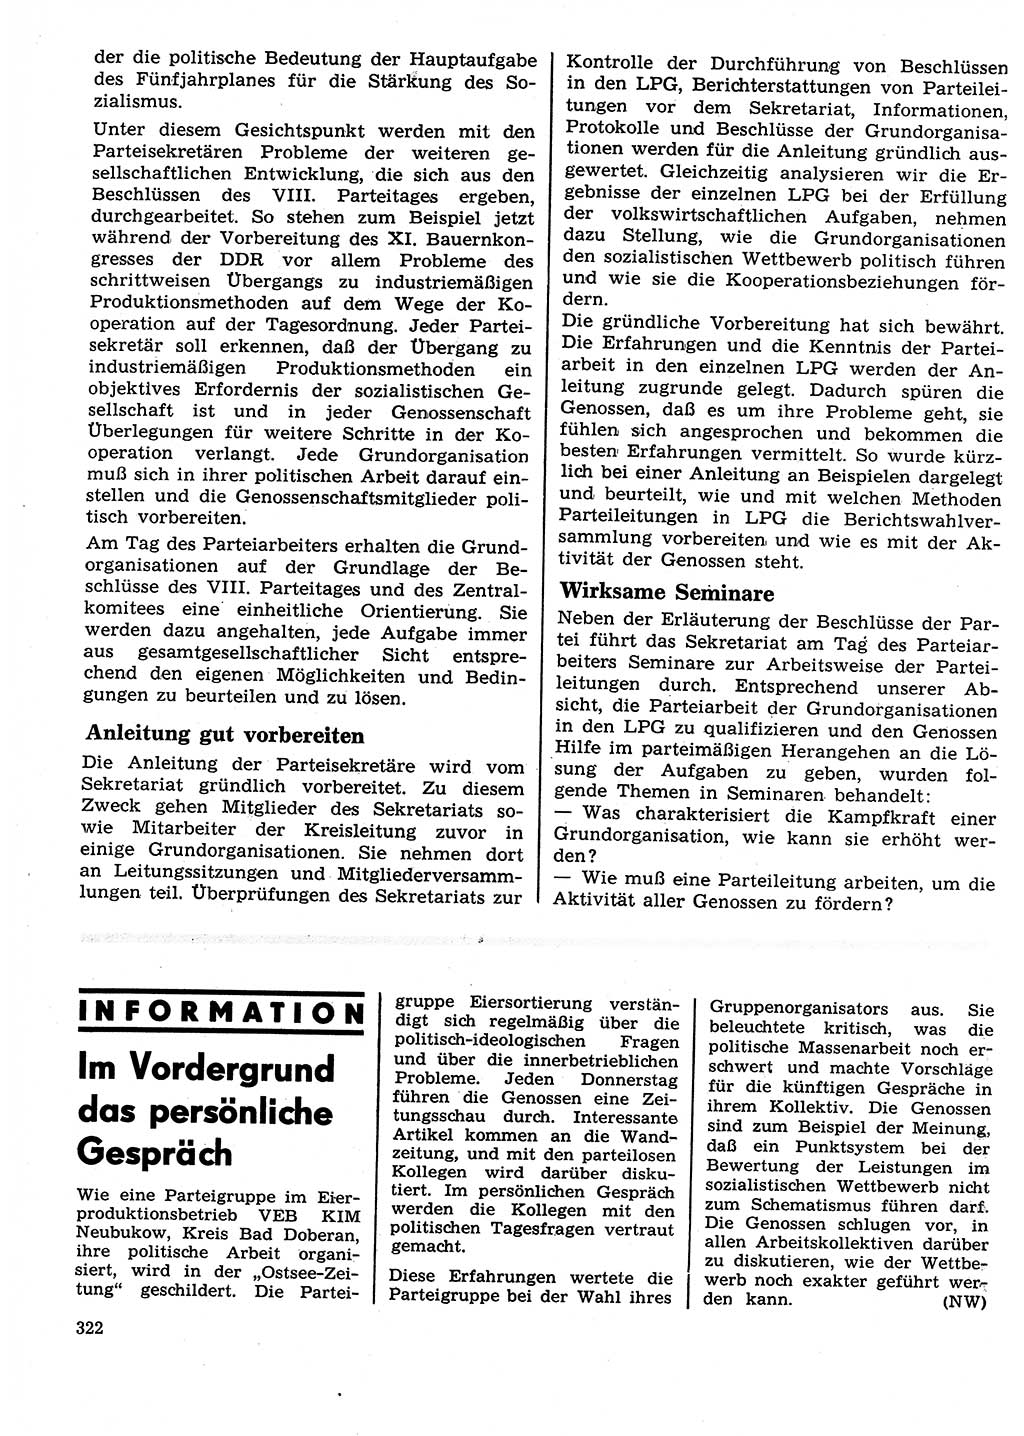 Neuer Weg (NW), Organ des Zentralkomitees (ZK) der SED (Sozialistische Einheitspartei Deutschlands) für Fragen des Parteilebens, 27. Jahrgang [Deutsche Demokratische Republik (DDR)] 1972, Seite 322 (NW ZK SED DDR 1972, S. 322)